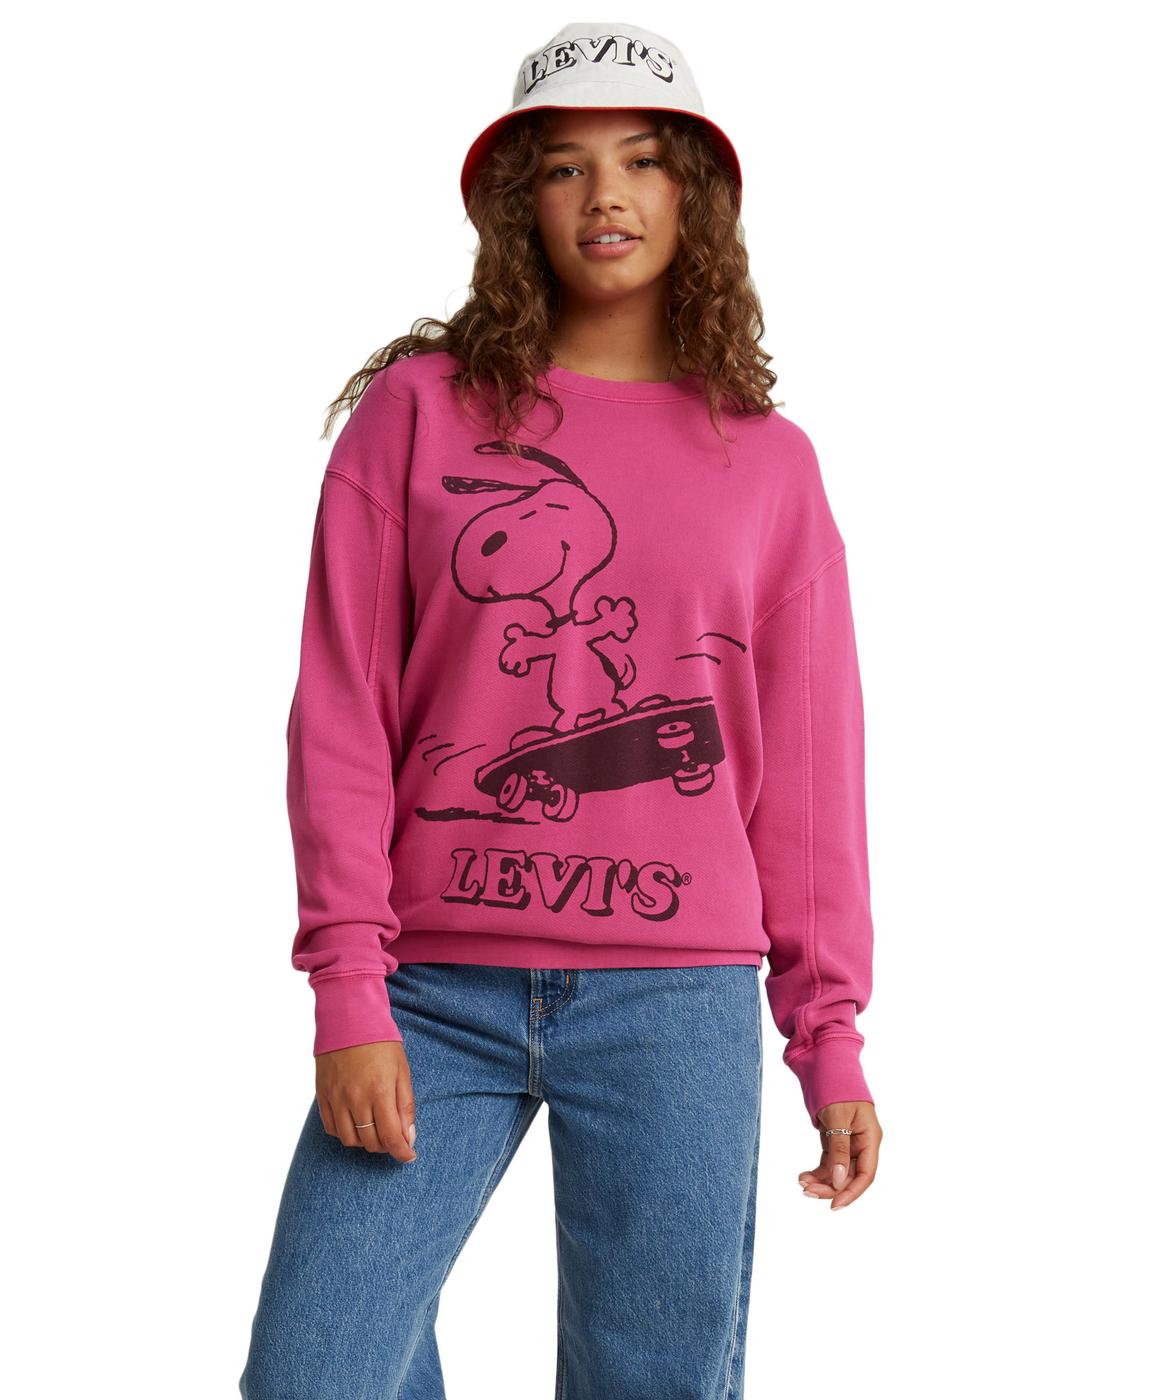 levi's x peanuts sweatshirt